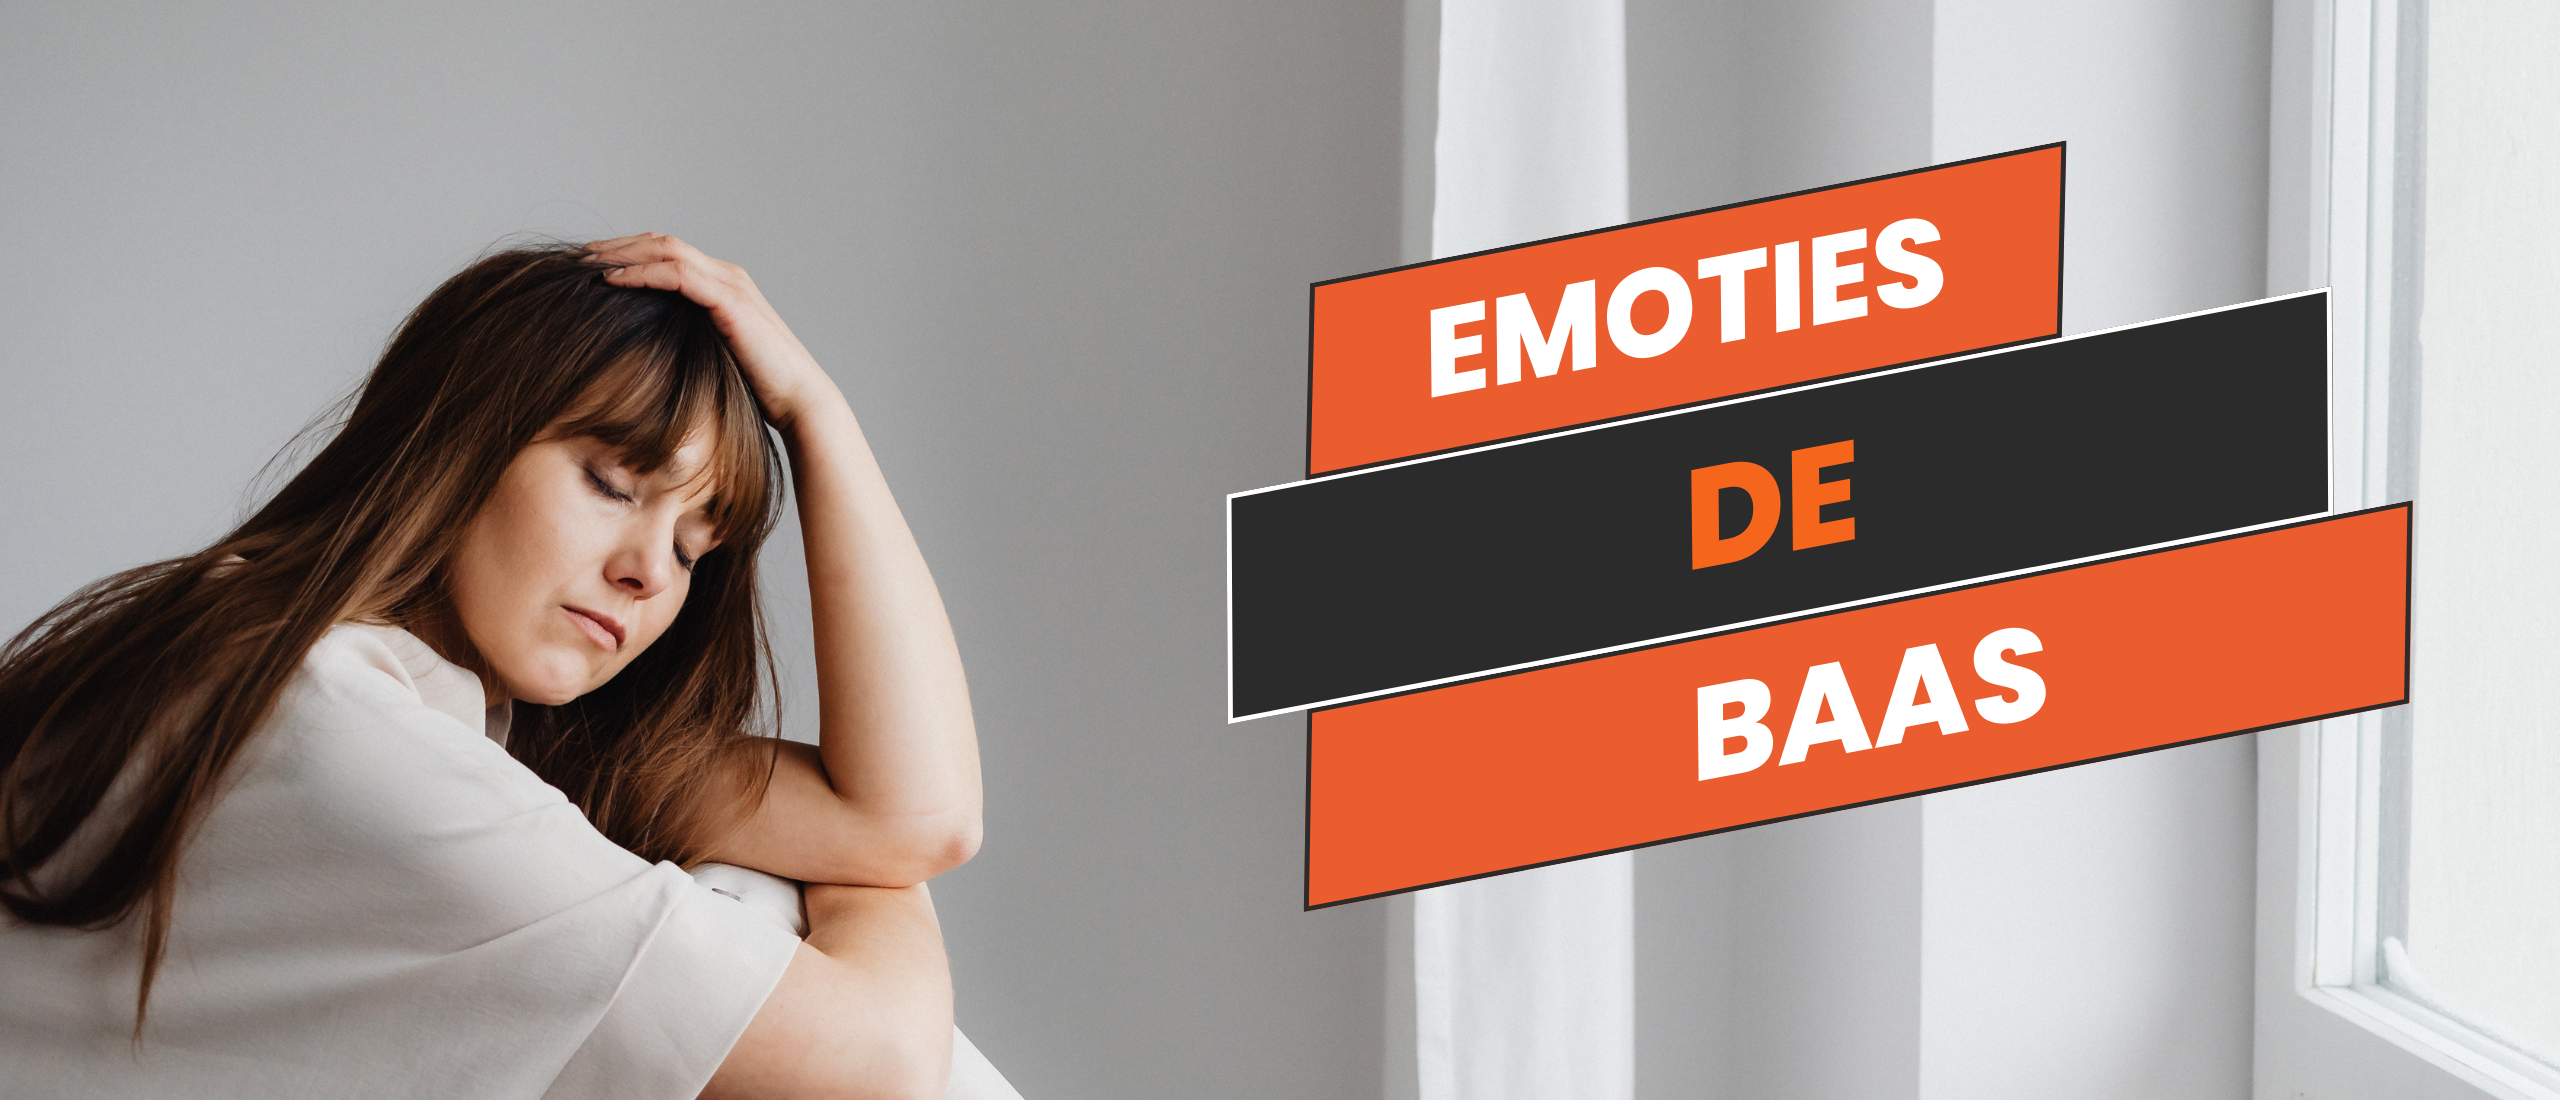 Emoties De Baas: 5 Manieren om Triggers te Neutraliseren en Voorkomen